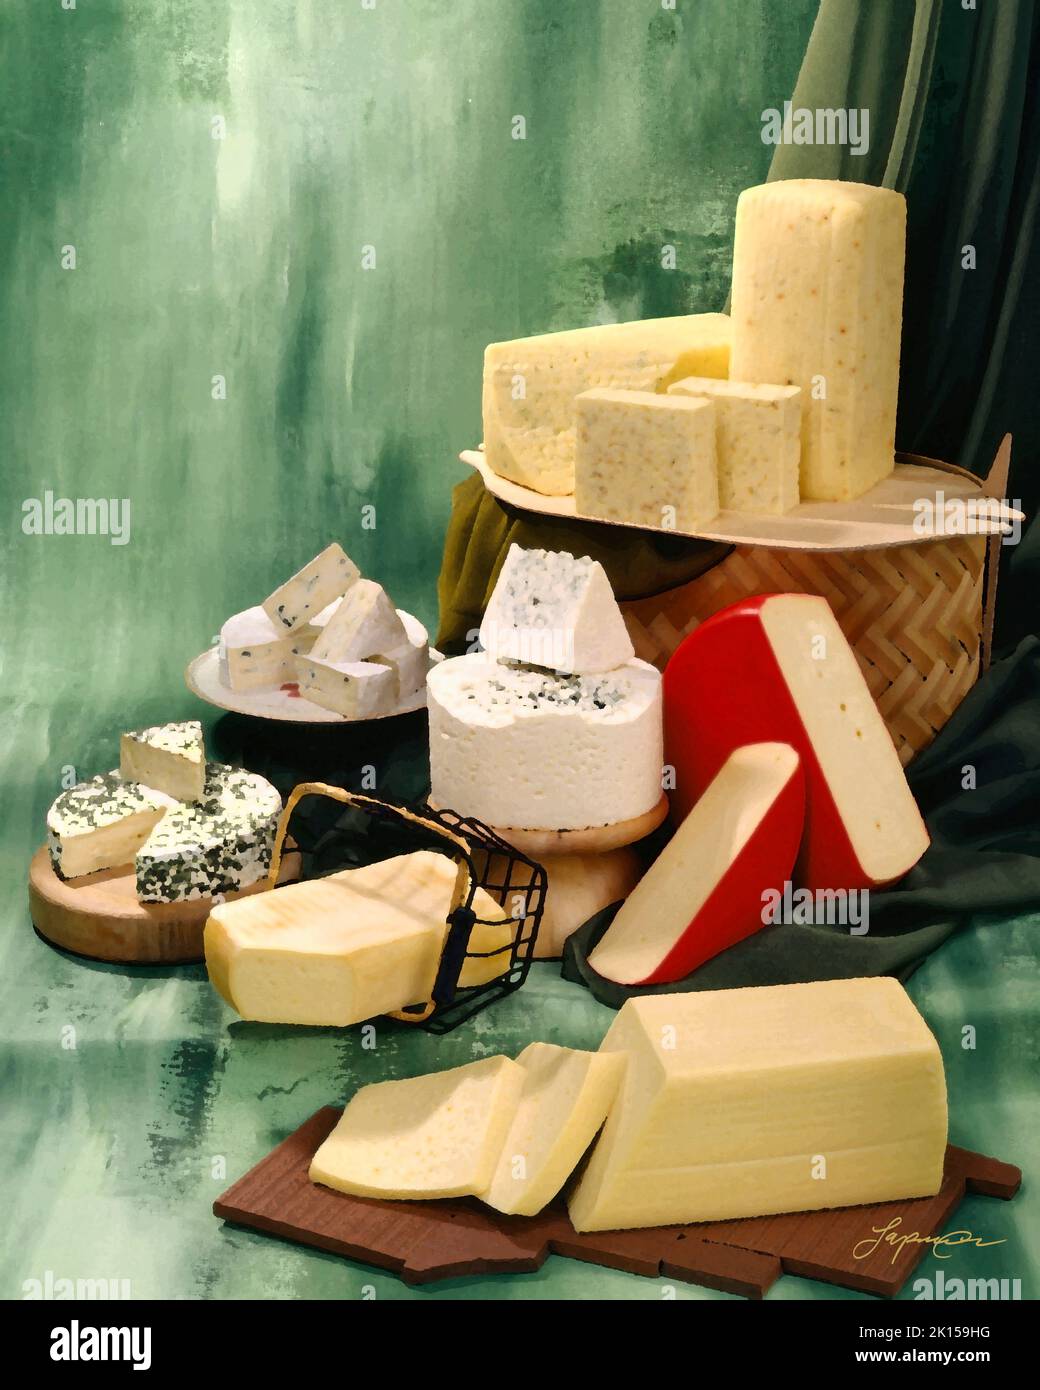 Malerisches Bild dänischer Käsesorten in Gruppenfoto auf grün getöntem, meliertem Hintergrund. Studio-Tischplatte. Klassisches Bild Stockfoto